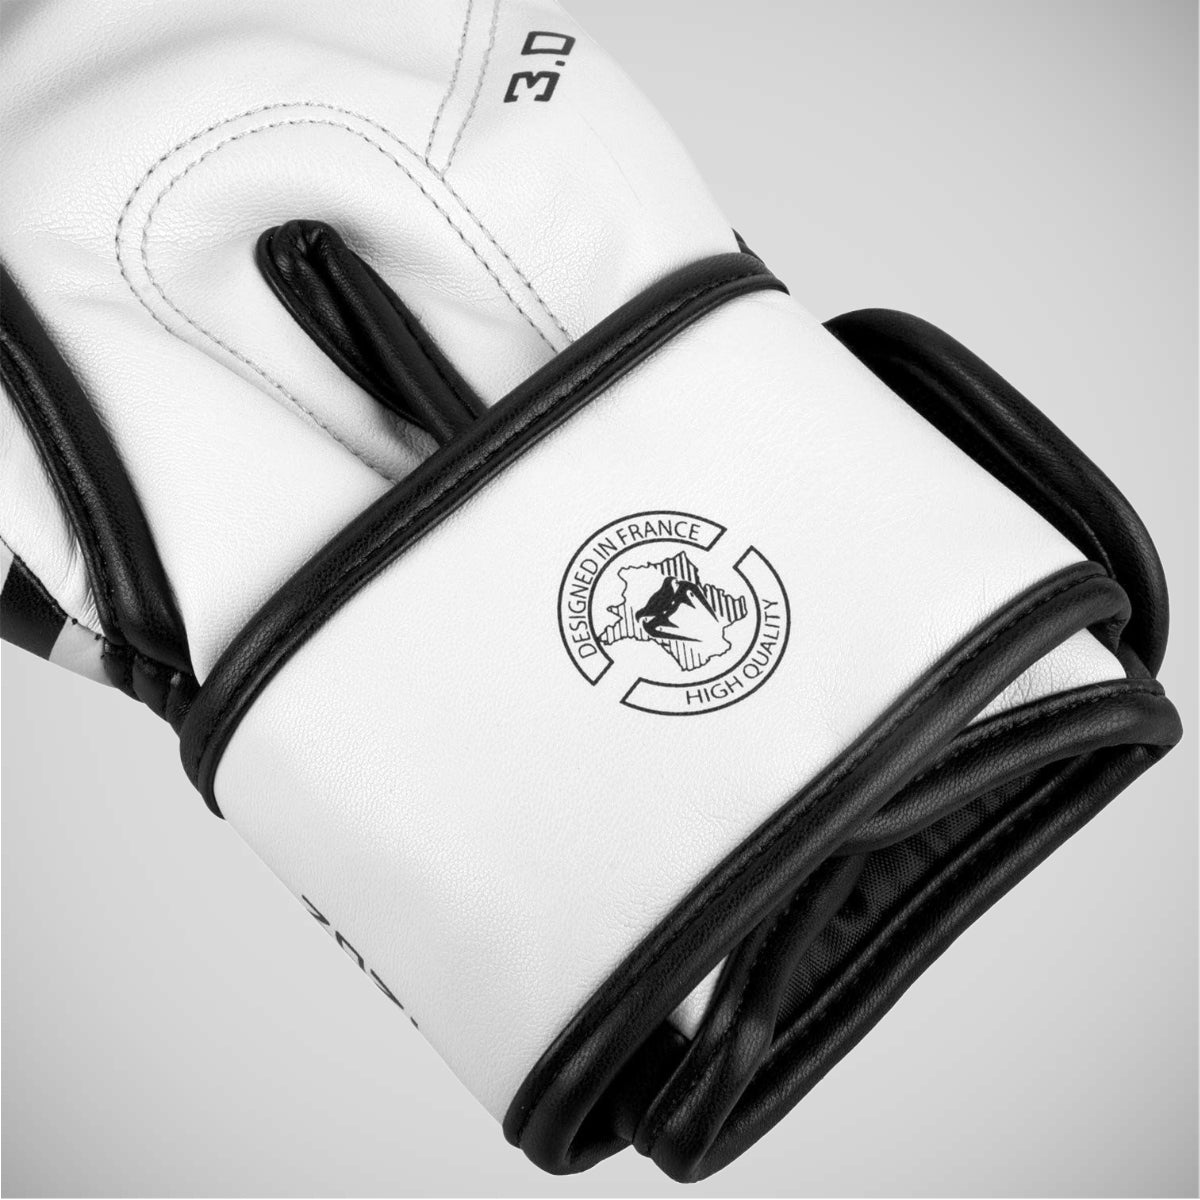 Venum Challenger 3.0 Boxing Gloves Black/White   